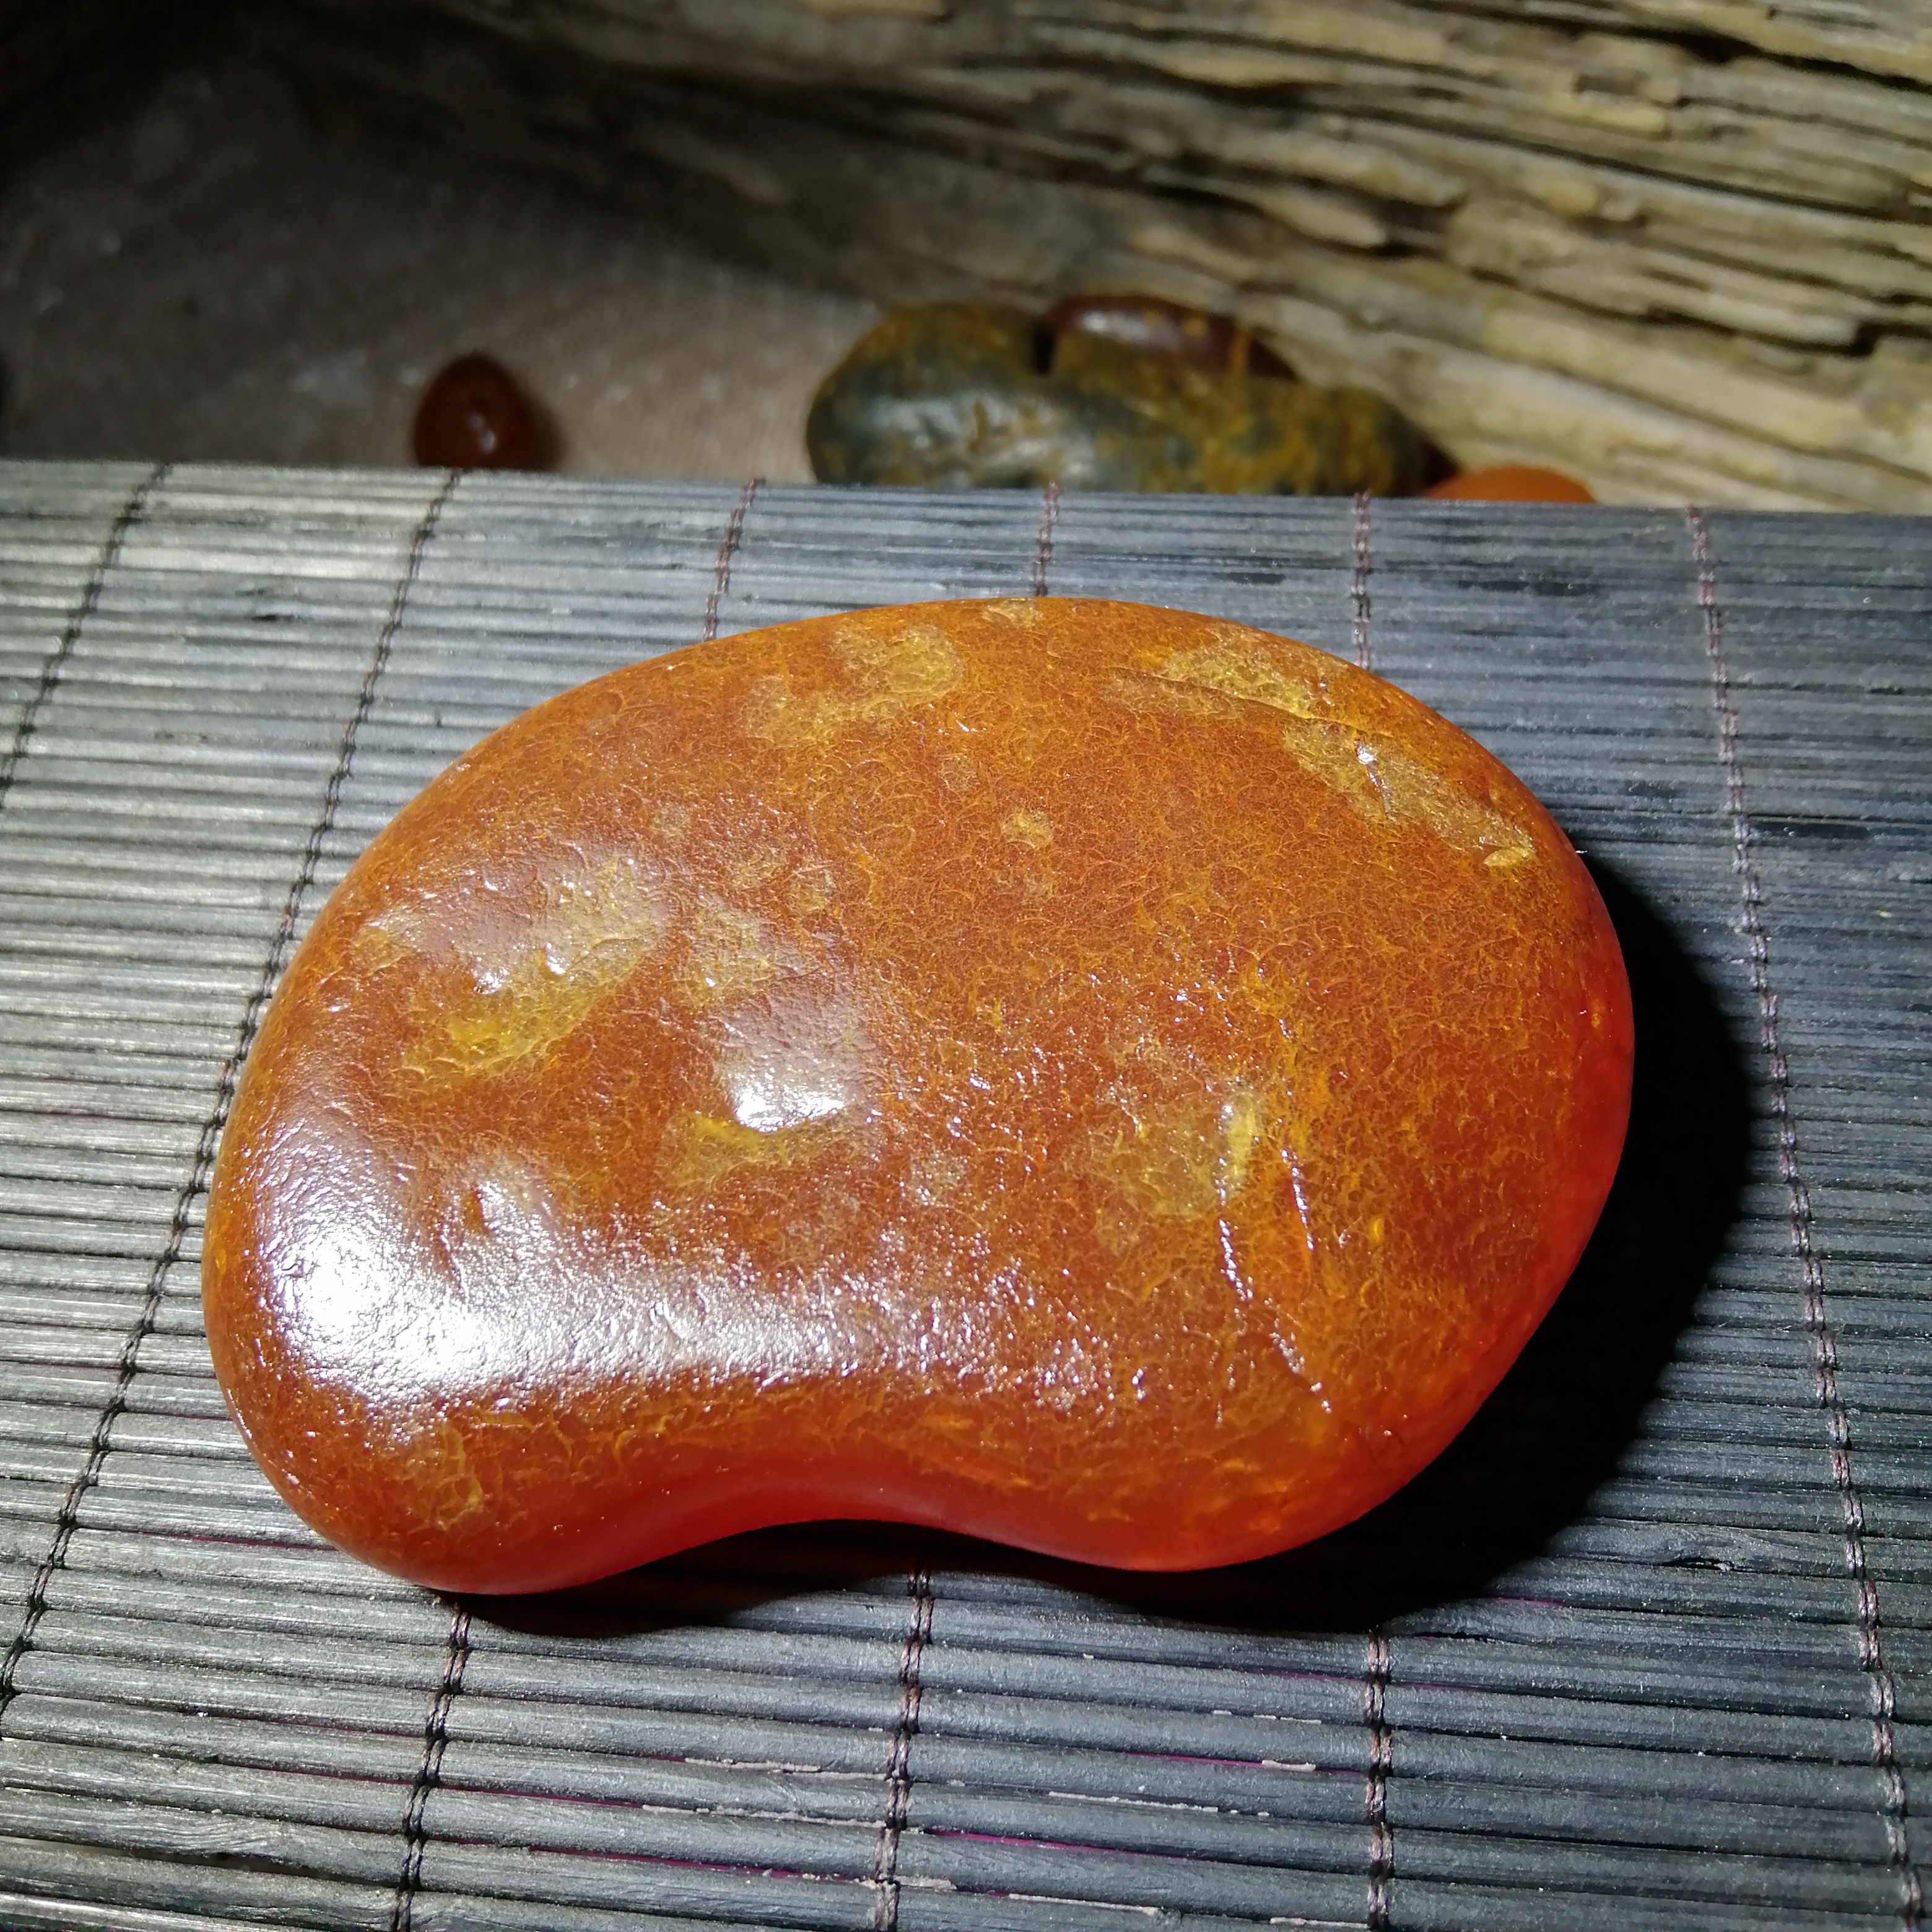 石馆 银林珠宝  玛瑙原石大籽料 藏品名称:玛瑙原石大籽料 石种:玛瑙